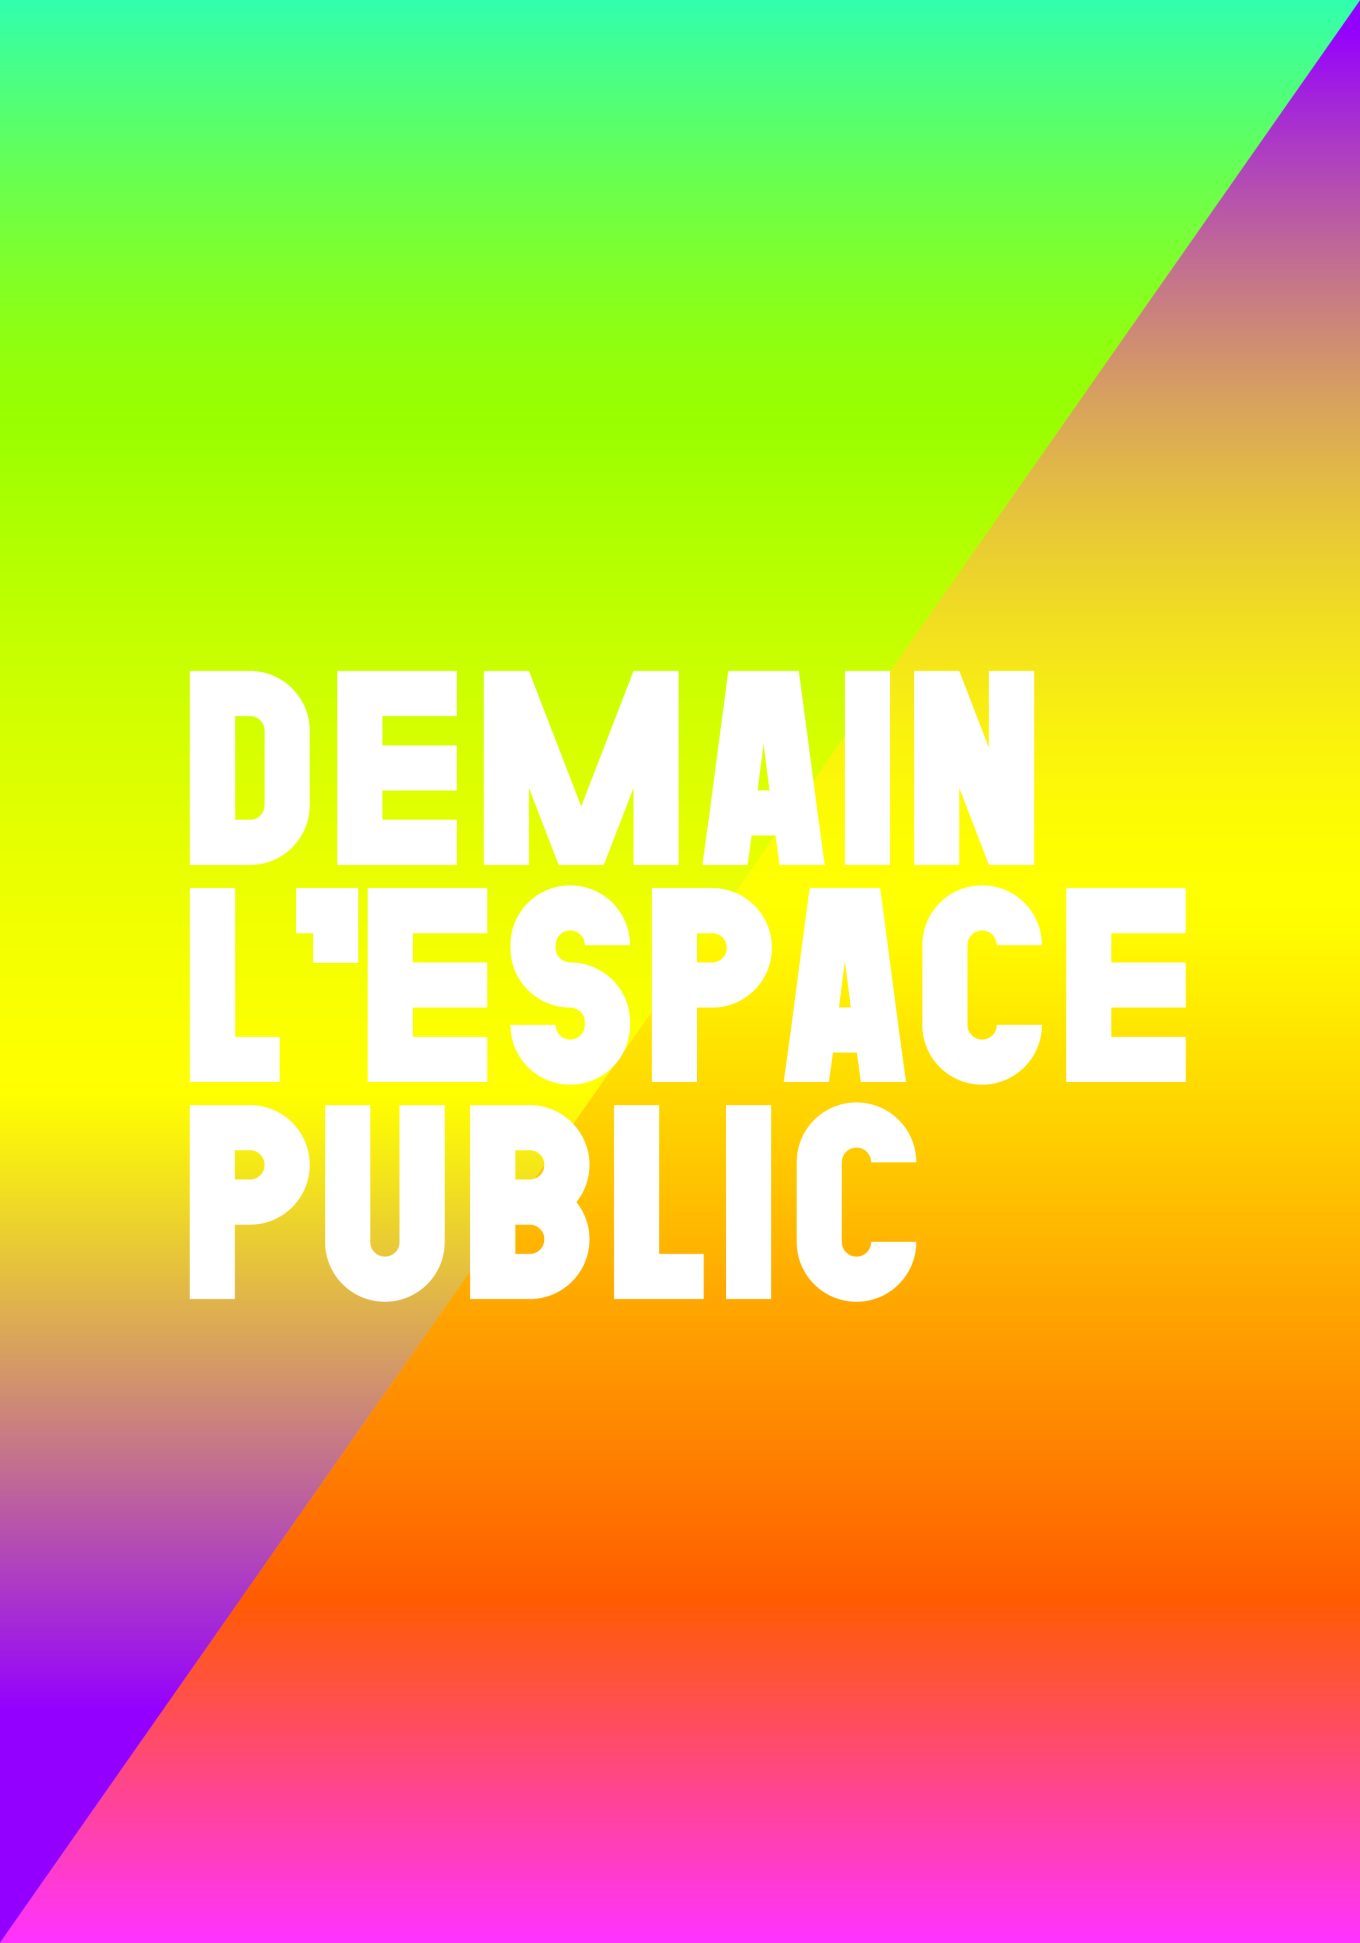 Demain, l’espace public. Cycle de rencontres inspirantes.